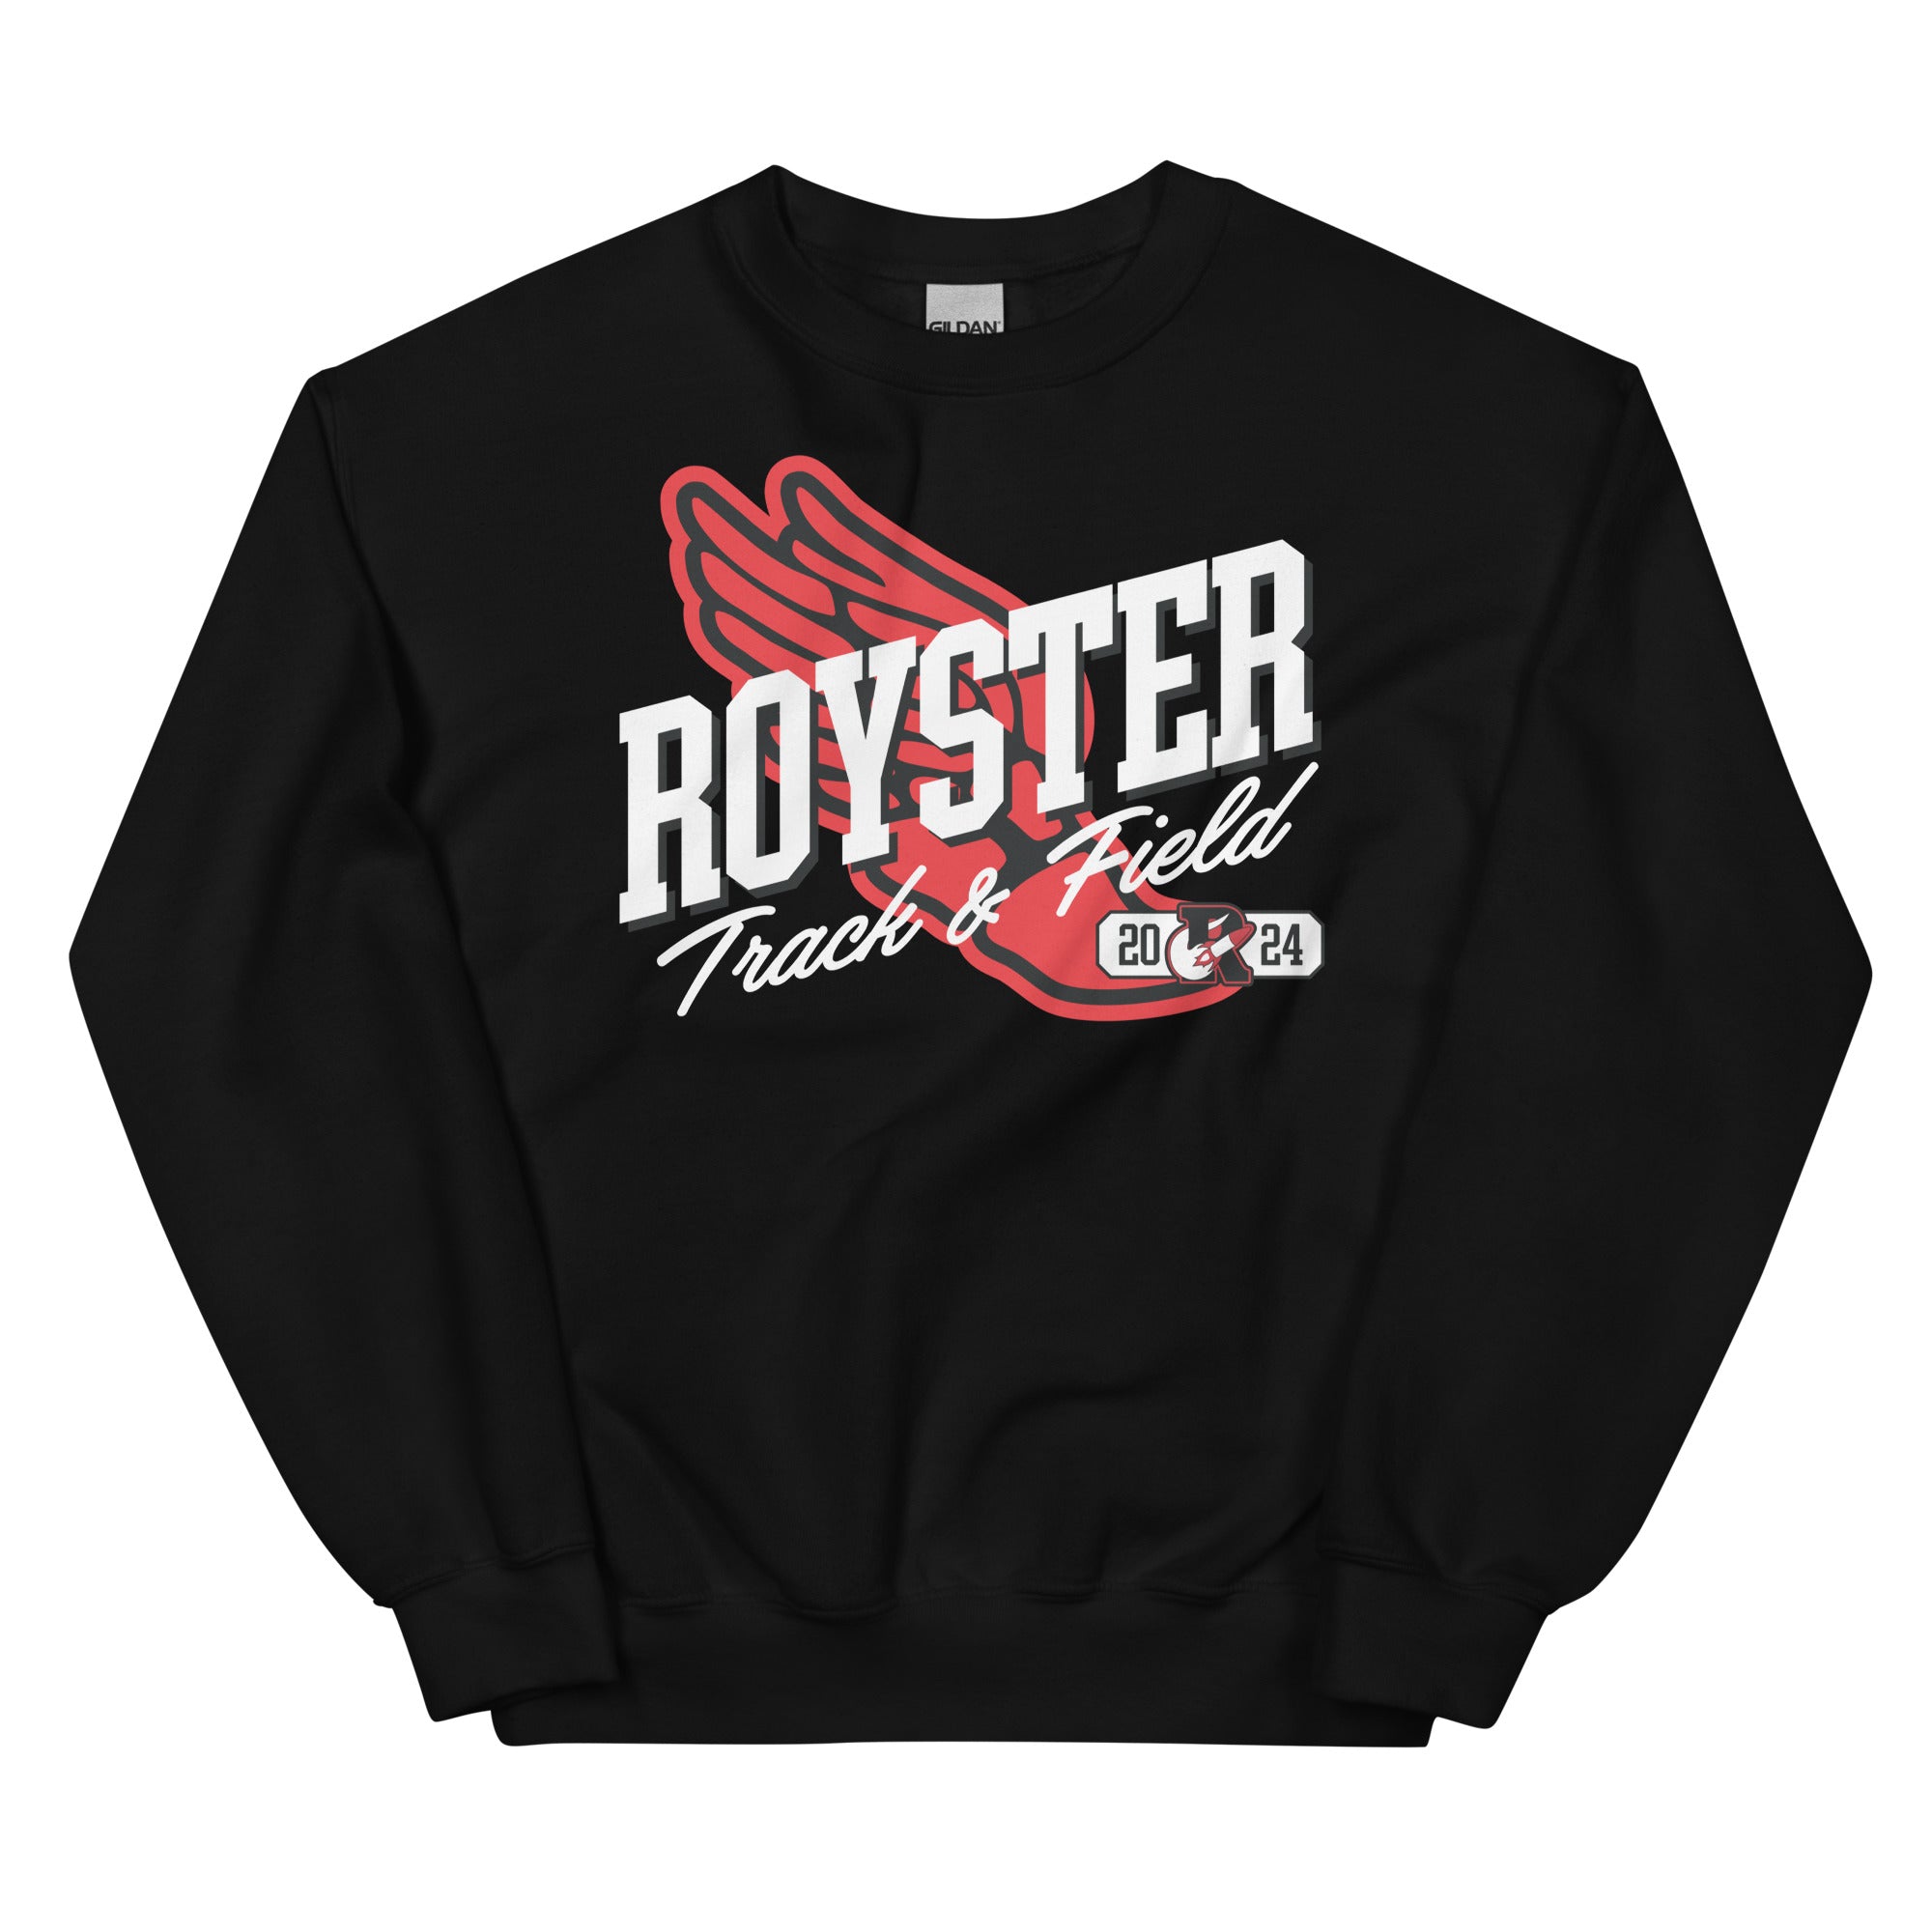 Royster Rockets Track & Field Unisex Crew Neck Sweatshirt